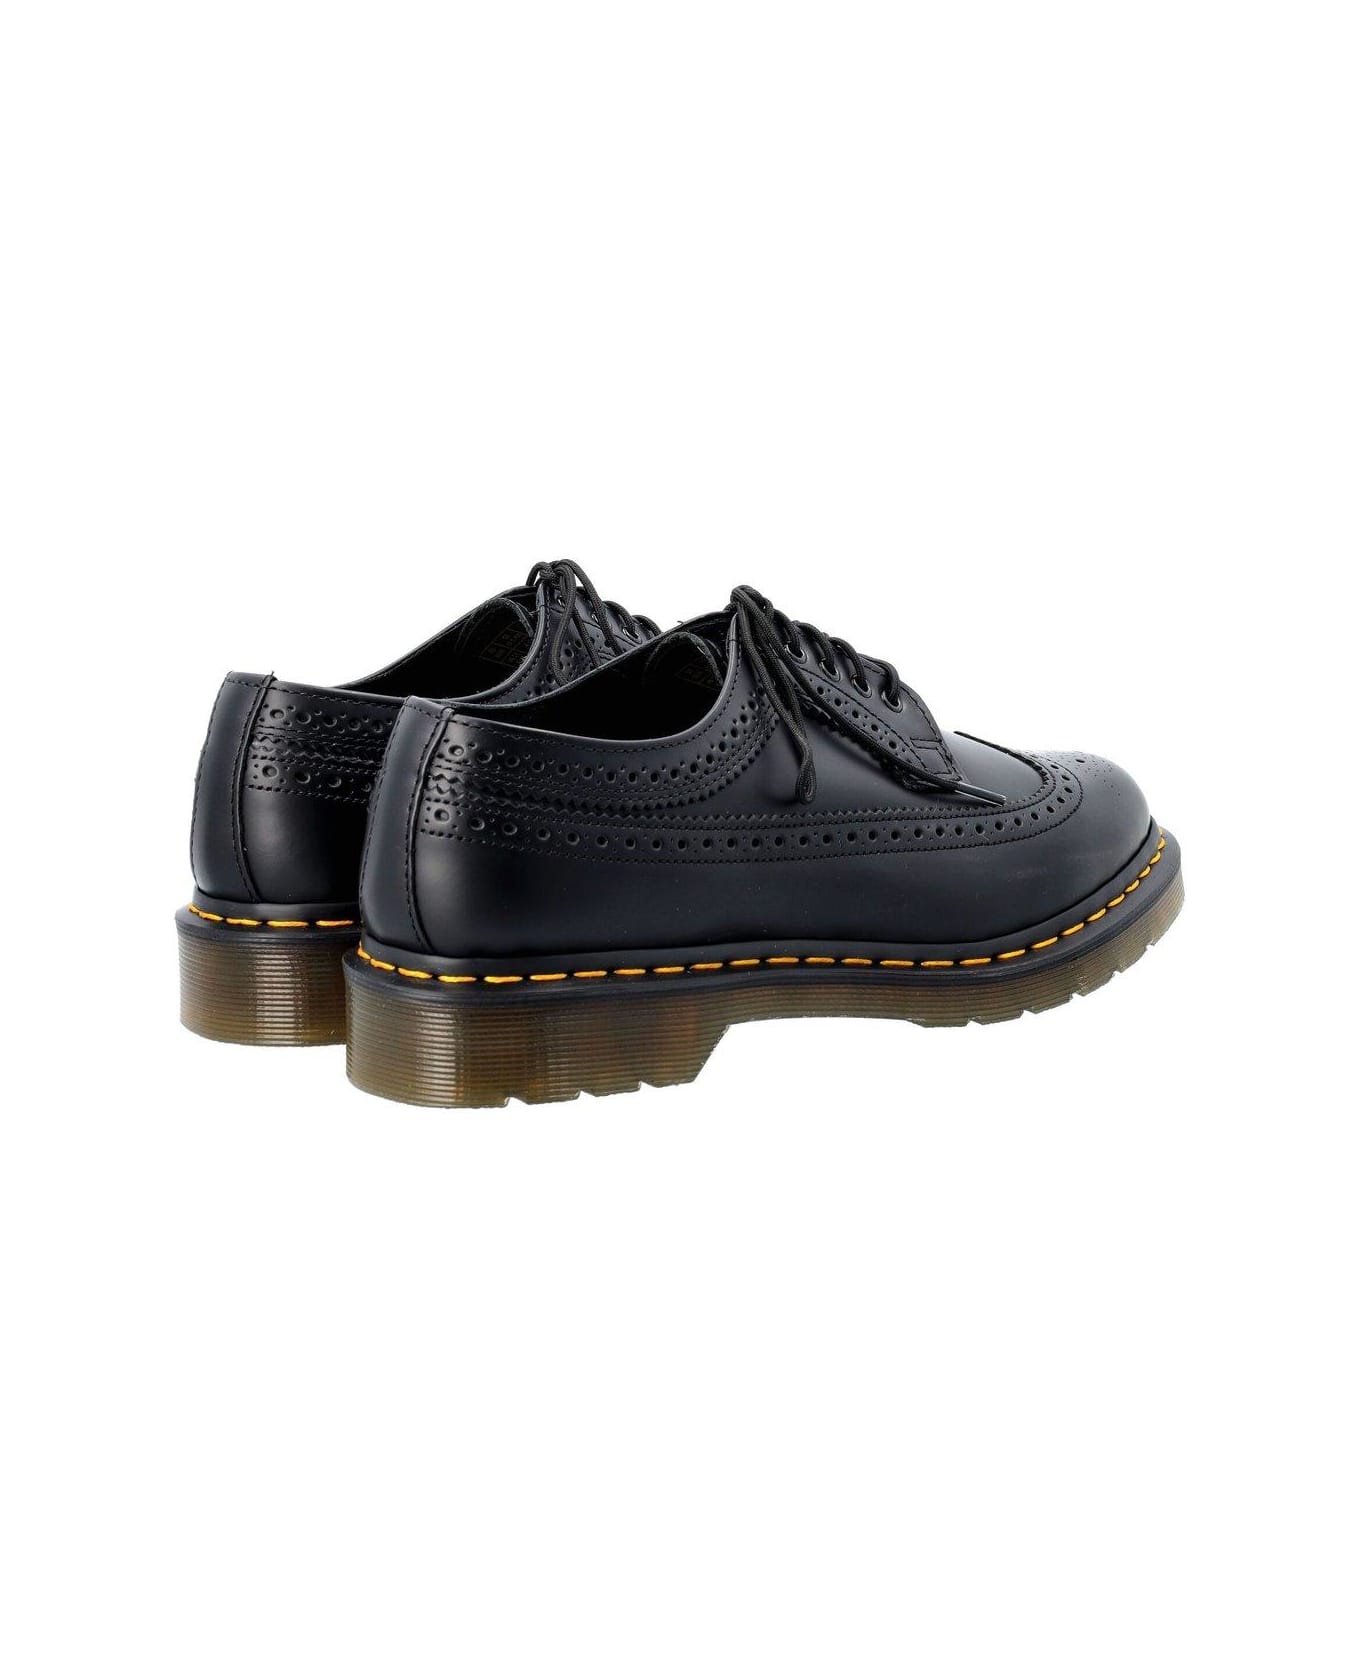 Dr. Martens 3989 Lace-up Brogue Shoes - black